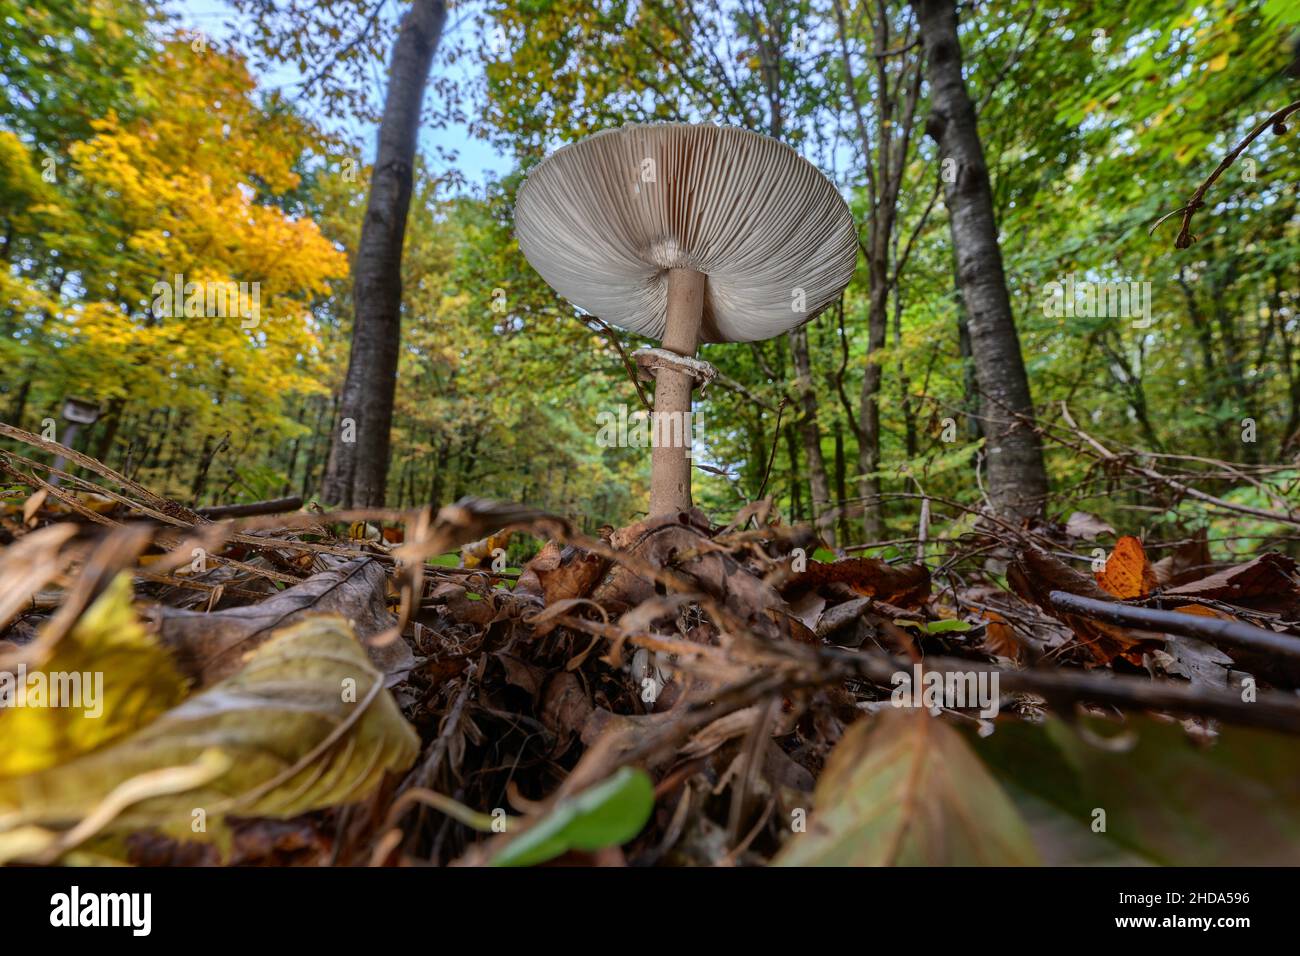 Parasol mushroom (Macrolepiota procera) on the forest floor Stock Photo